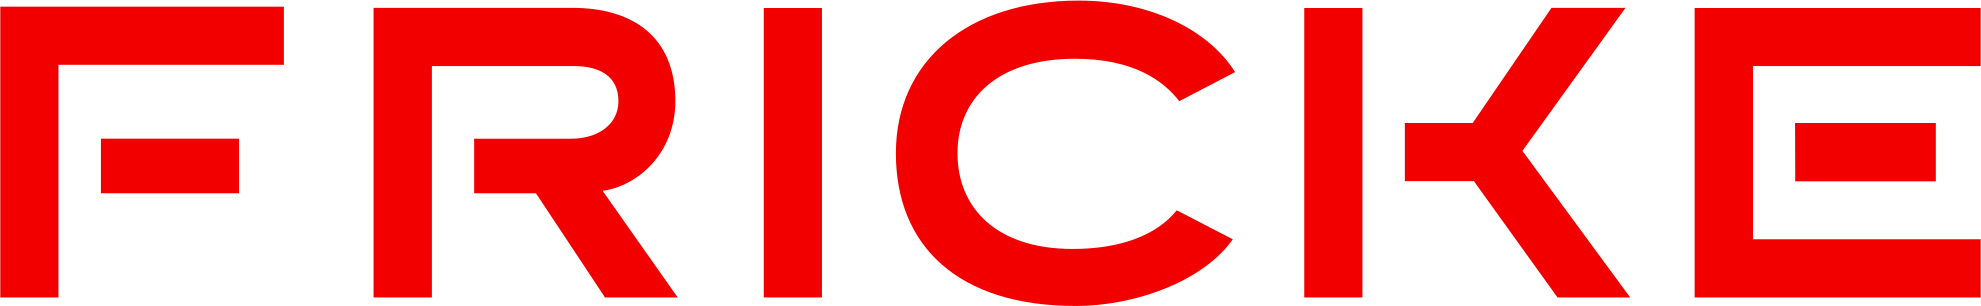 fricke logo